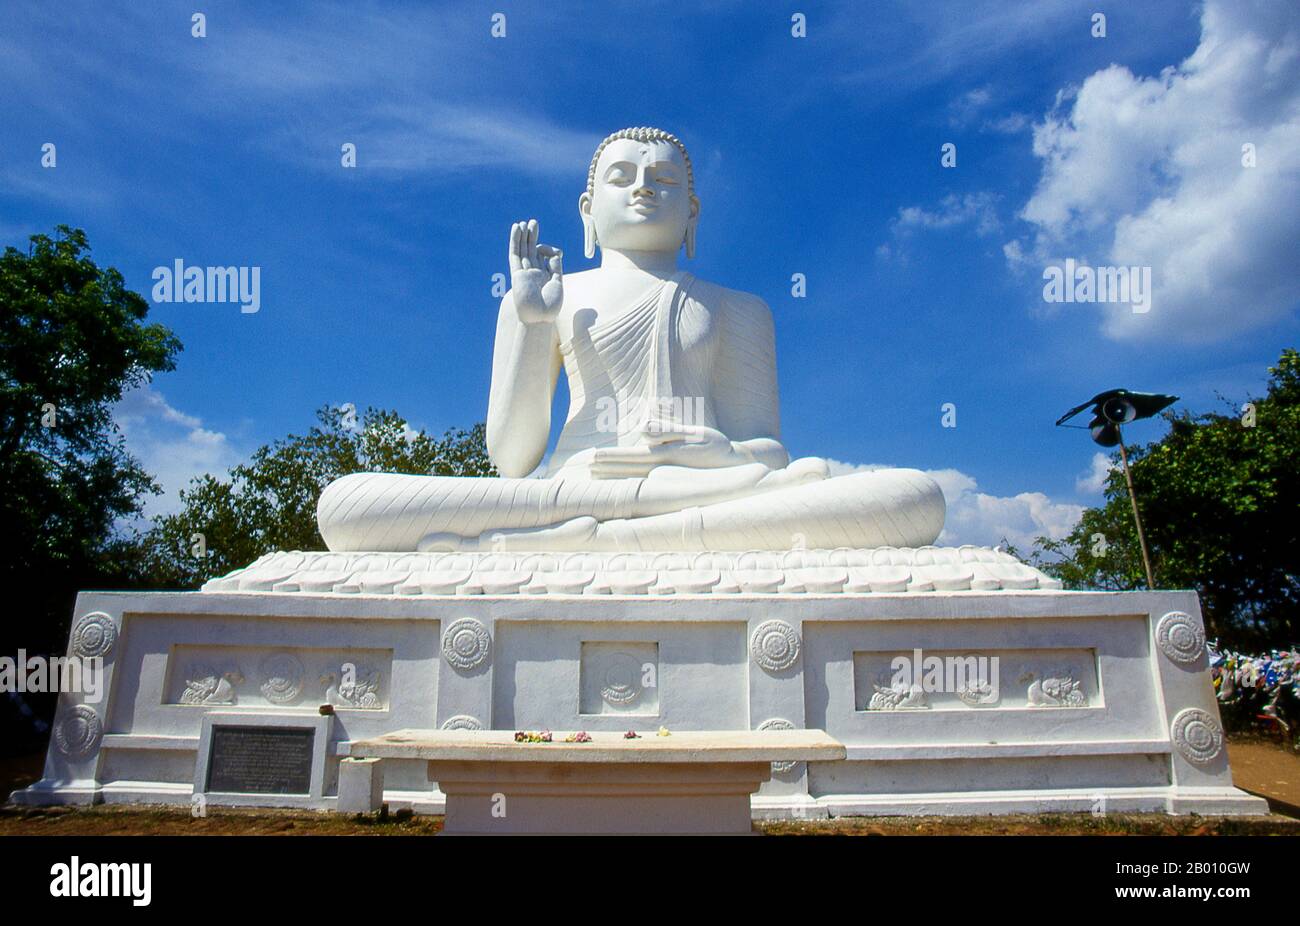 Sri Lanka: Riesiger sitzender Buddha in Ambasthala Dagoba, Mihintale. Mihintale ist ein Berggipfel in der Nähe von Anuradhapura, der von Sri Lankans als Ort einer Begegnung zwischen dem buddhistischen Mönch Mahinda und König Devanampiyatissa geglaubt wird, der die Präsenz des Buddhismus in Sri Lanka einweihte. Es ist jetzt ein Wallfahrtsort und der Ort von mehreren religiösen Denkmälern und verlassenen Strukturen. Stockfoto